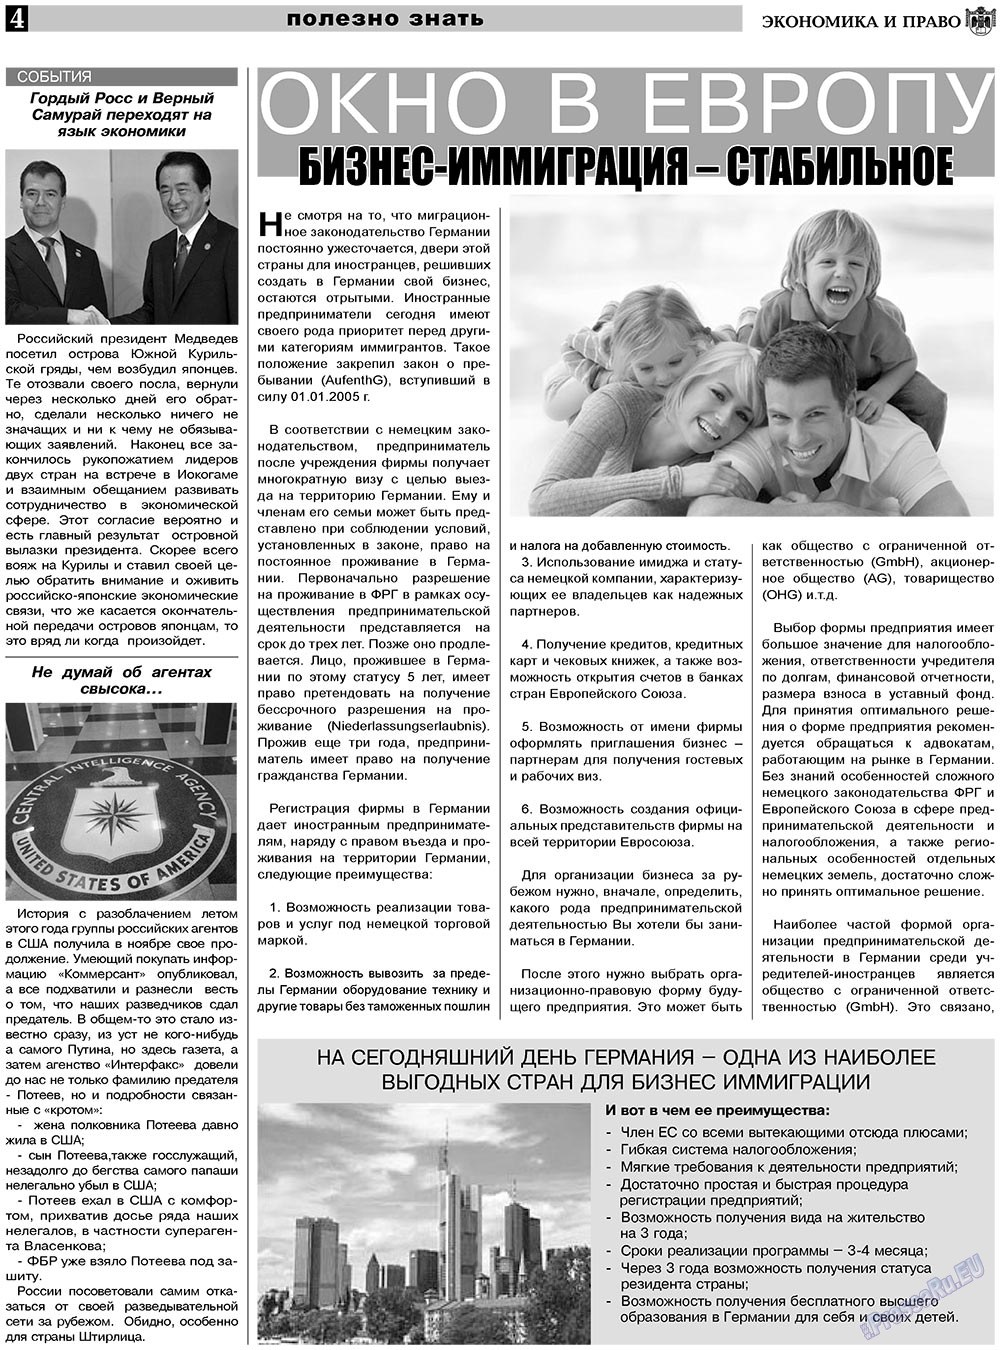 Экономика и право, газета. 2010 №12 стр.4